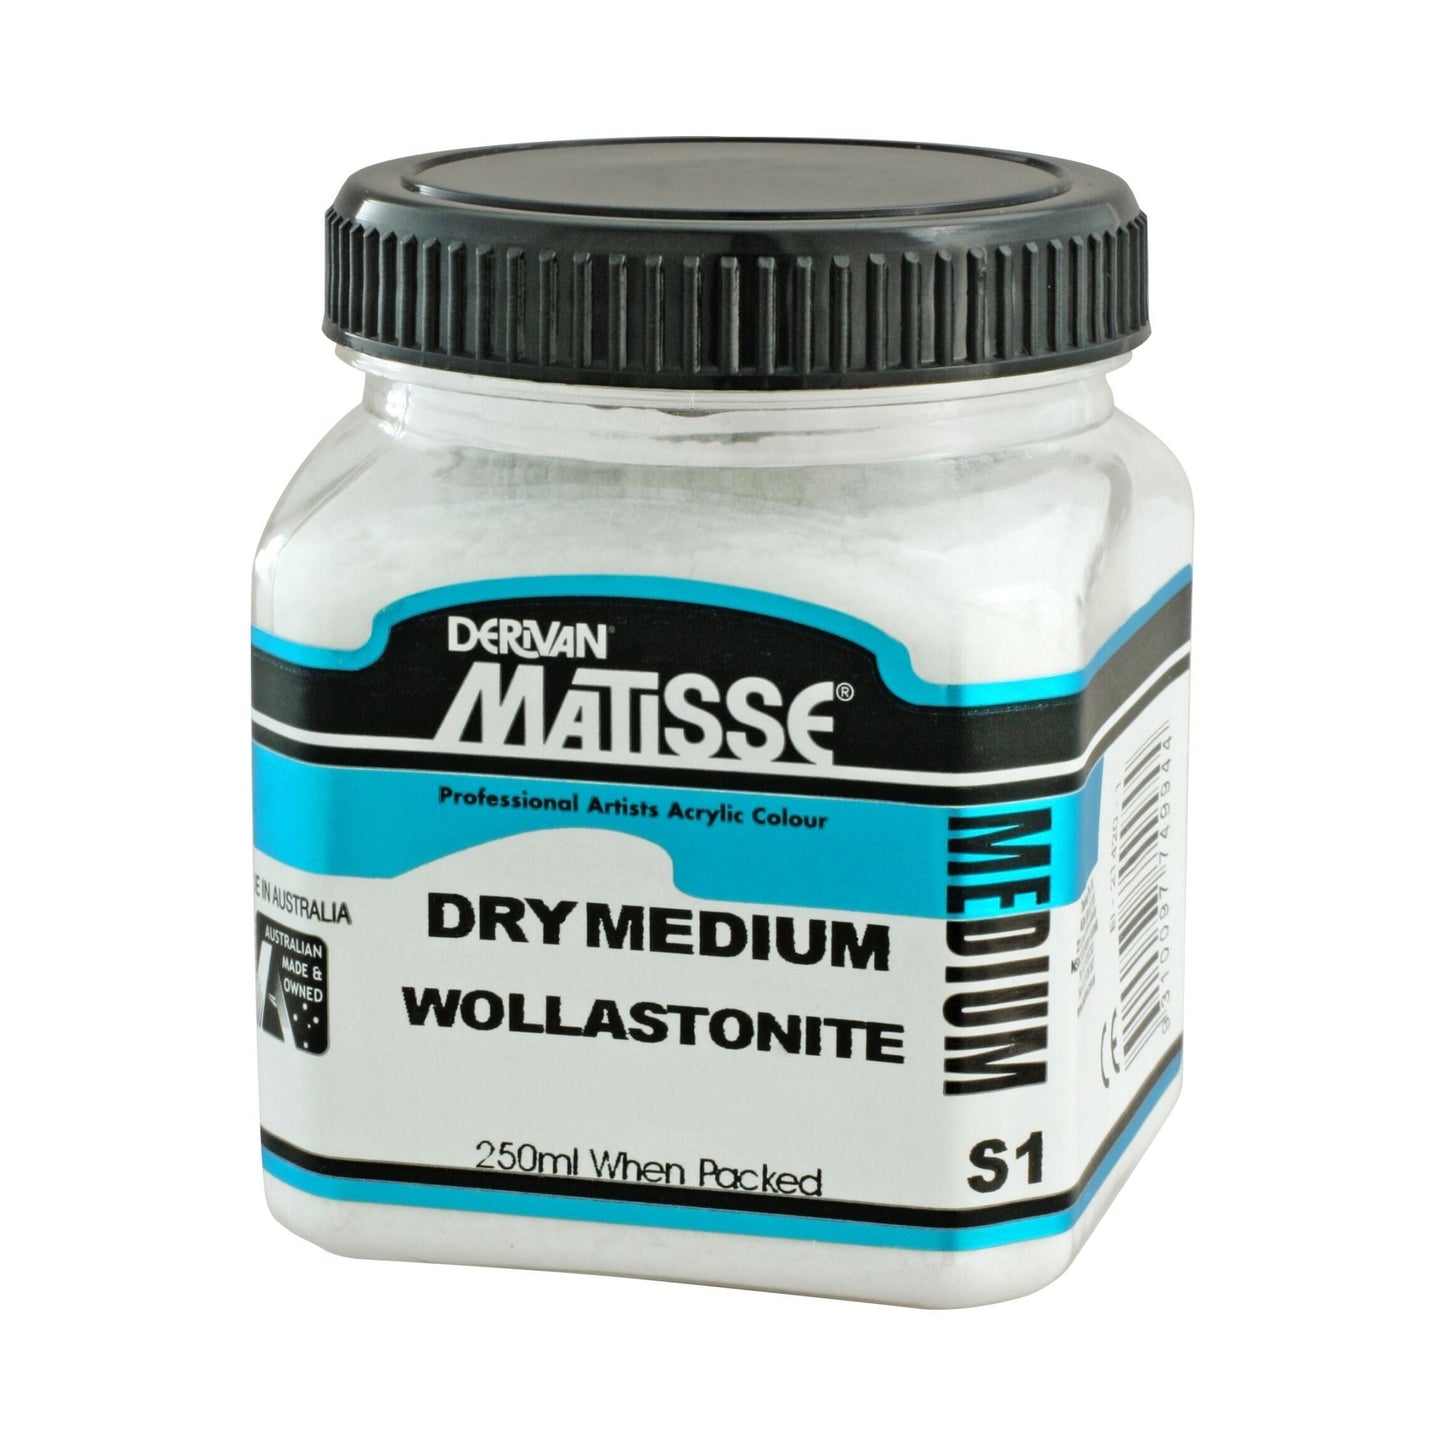 Matisse Dry Medium 250ml Wollstonite - theartshop.com.au